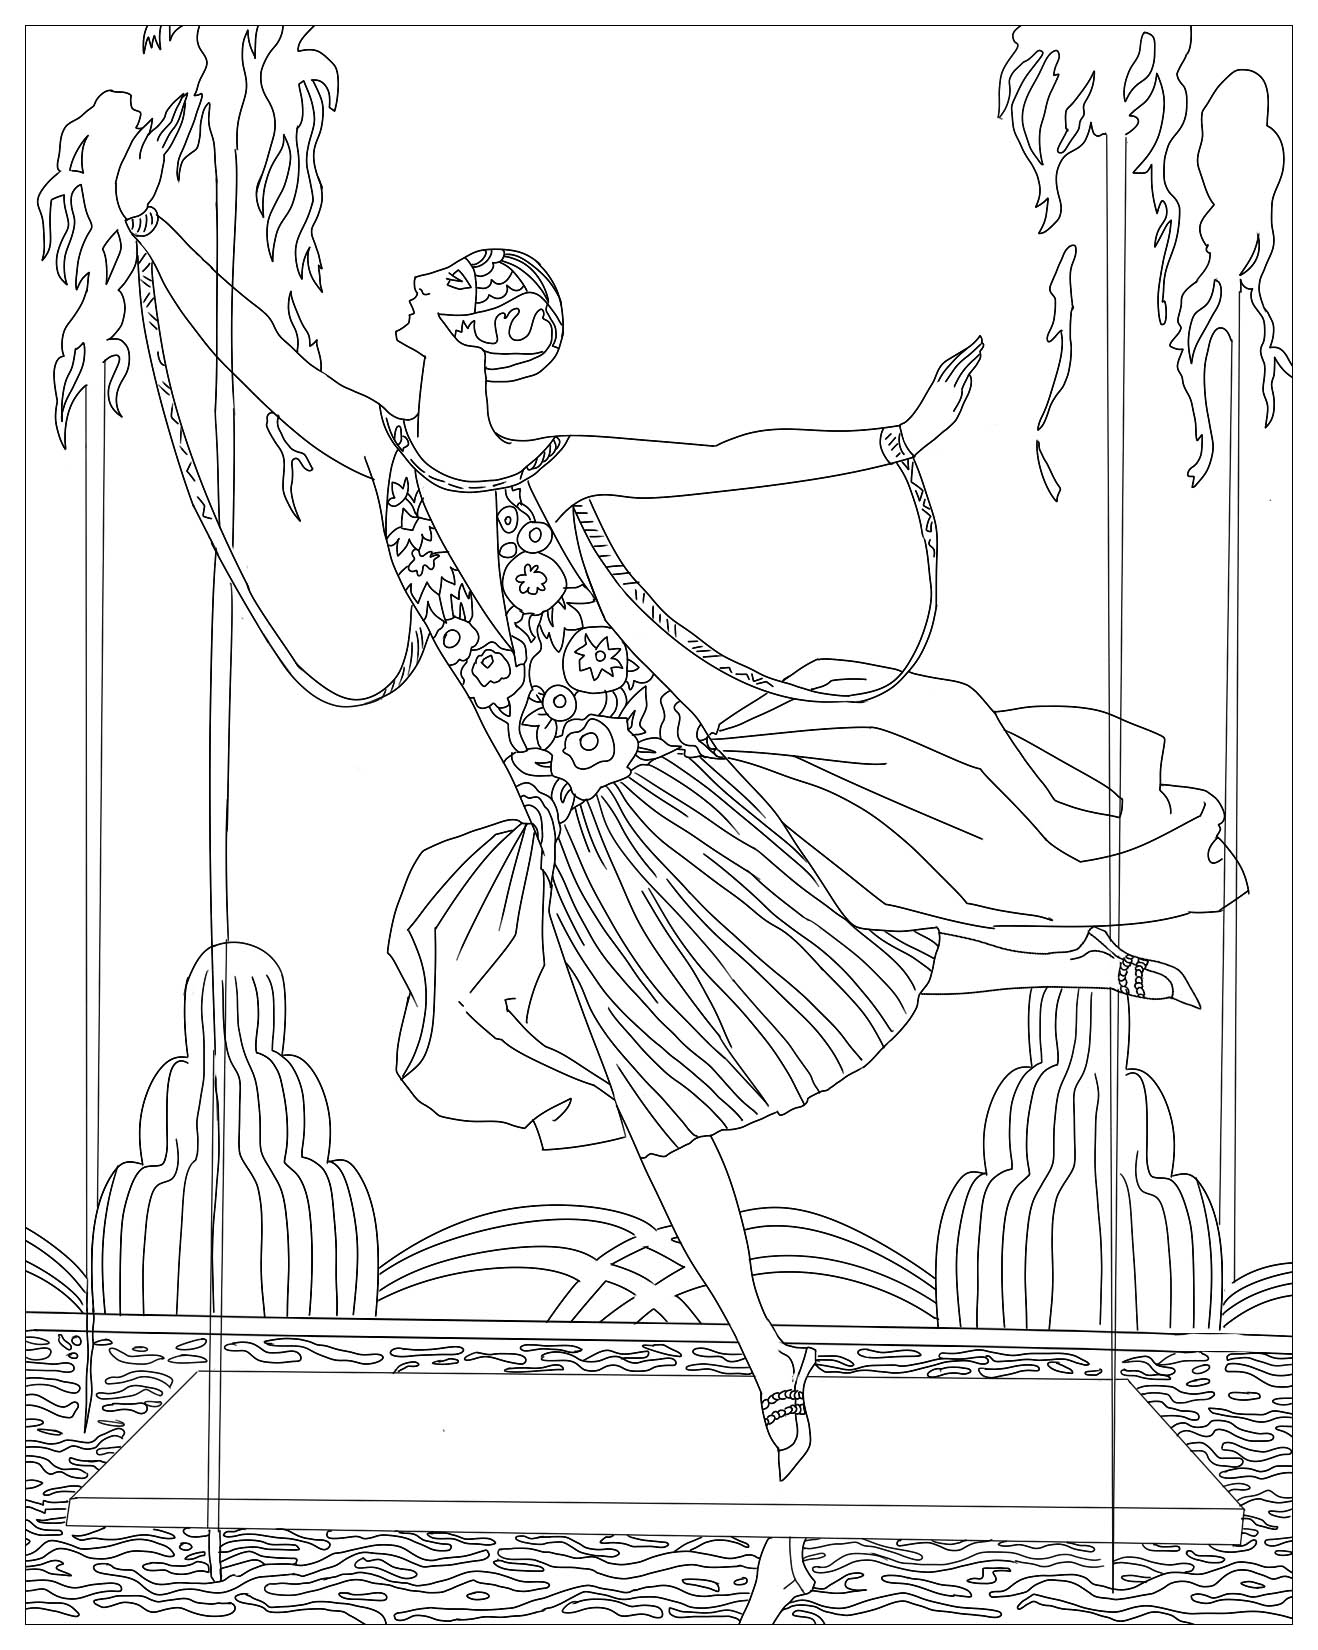 Página para colorir criada a partir de uma ilustração Art Déco de George Barbier: Bailarina com jactos de água (1925)